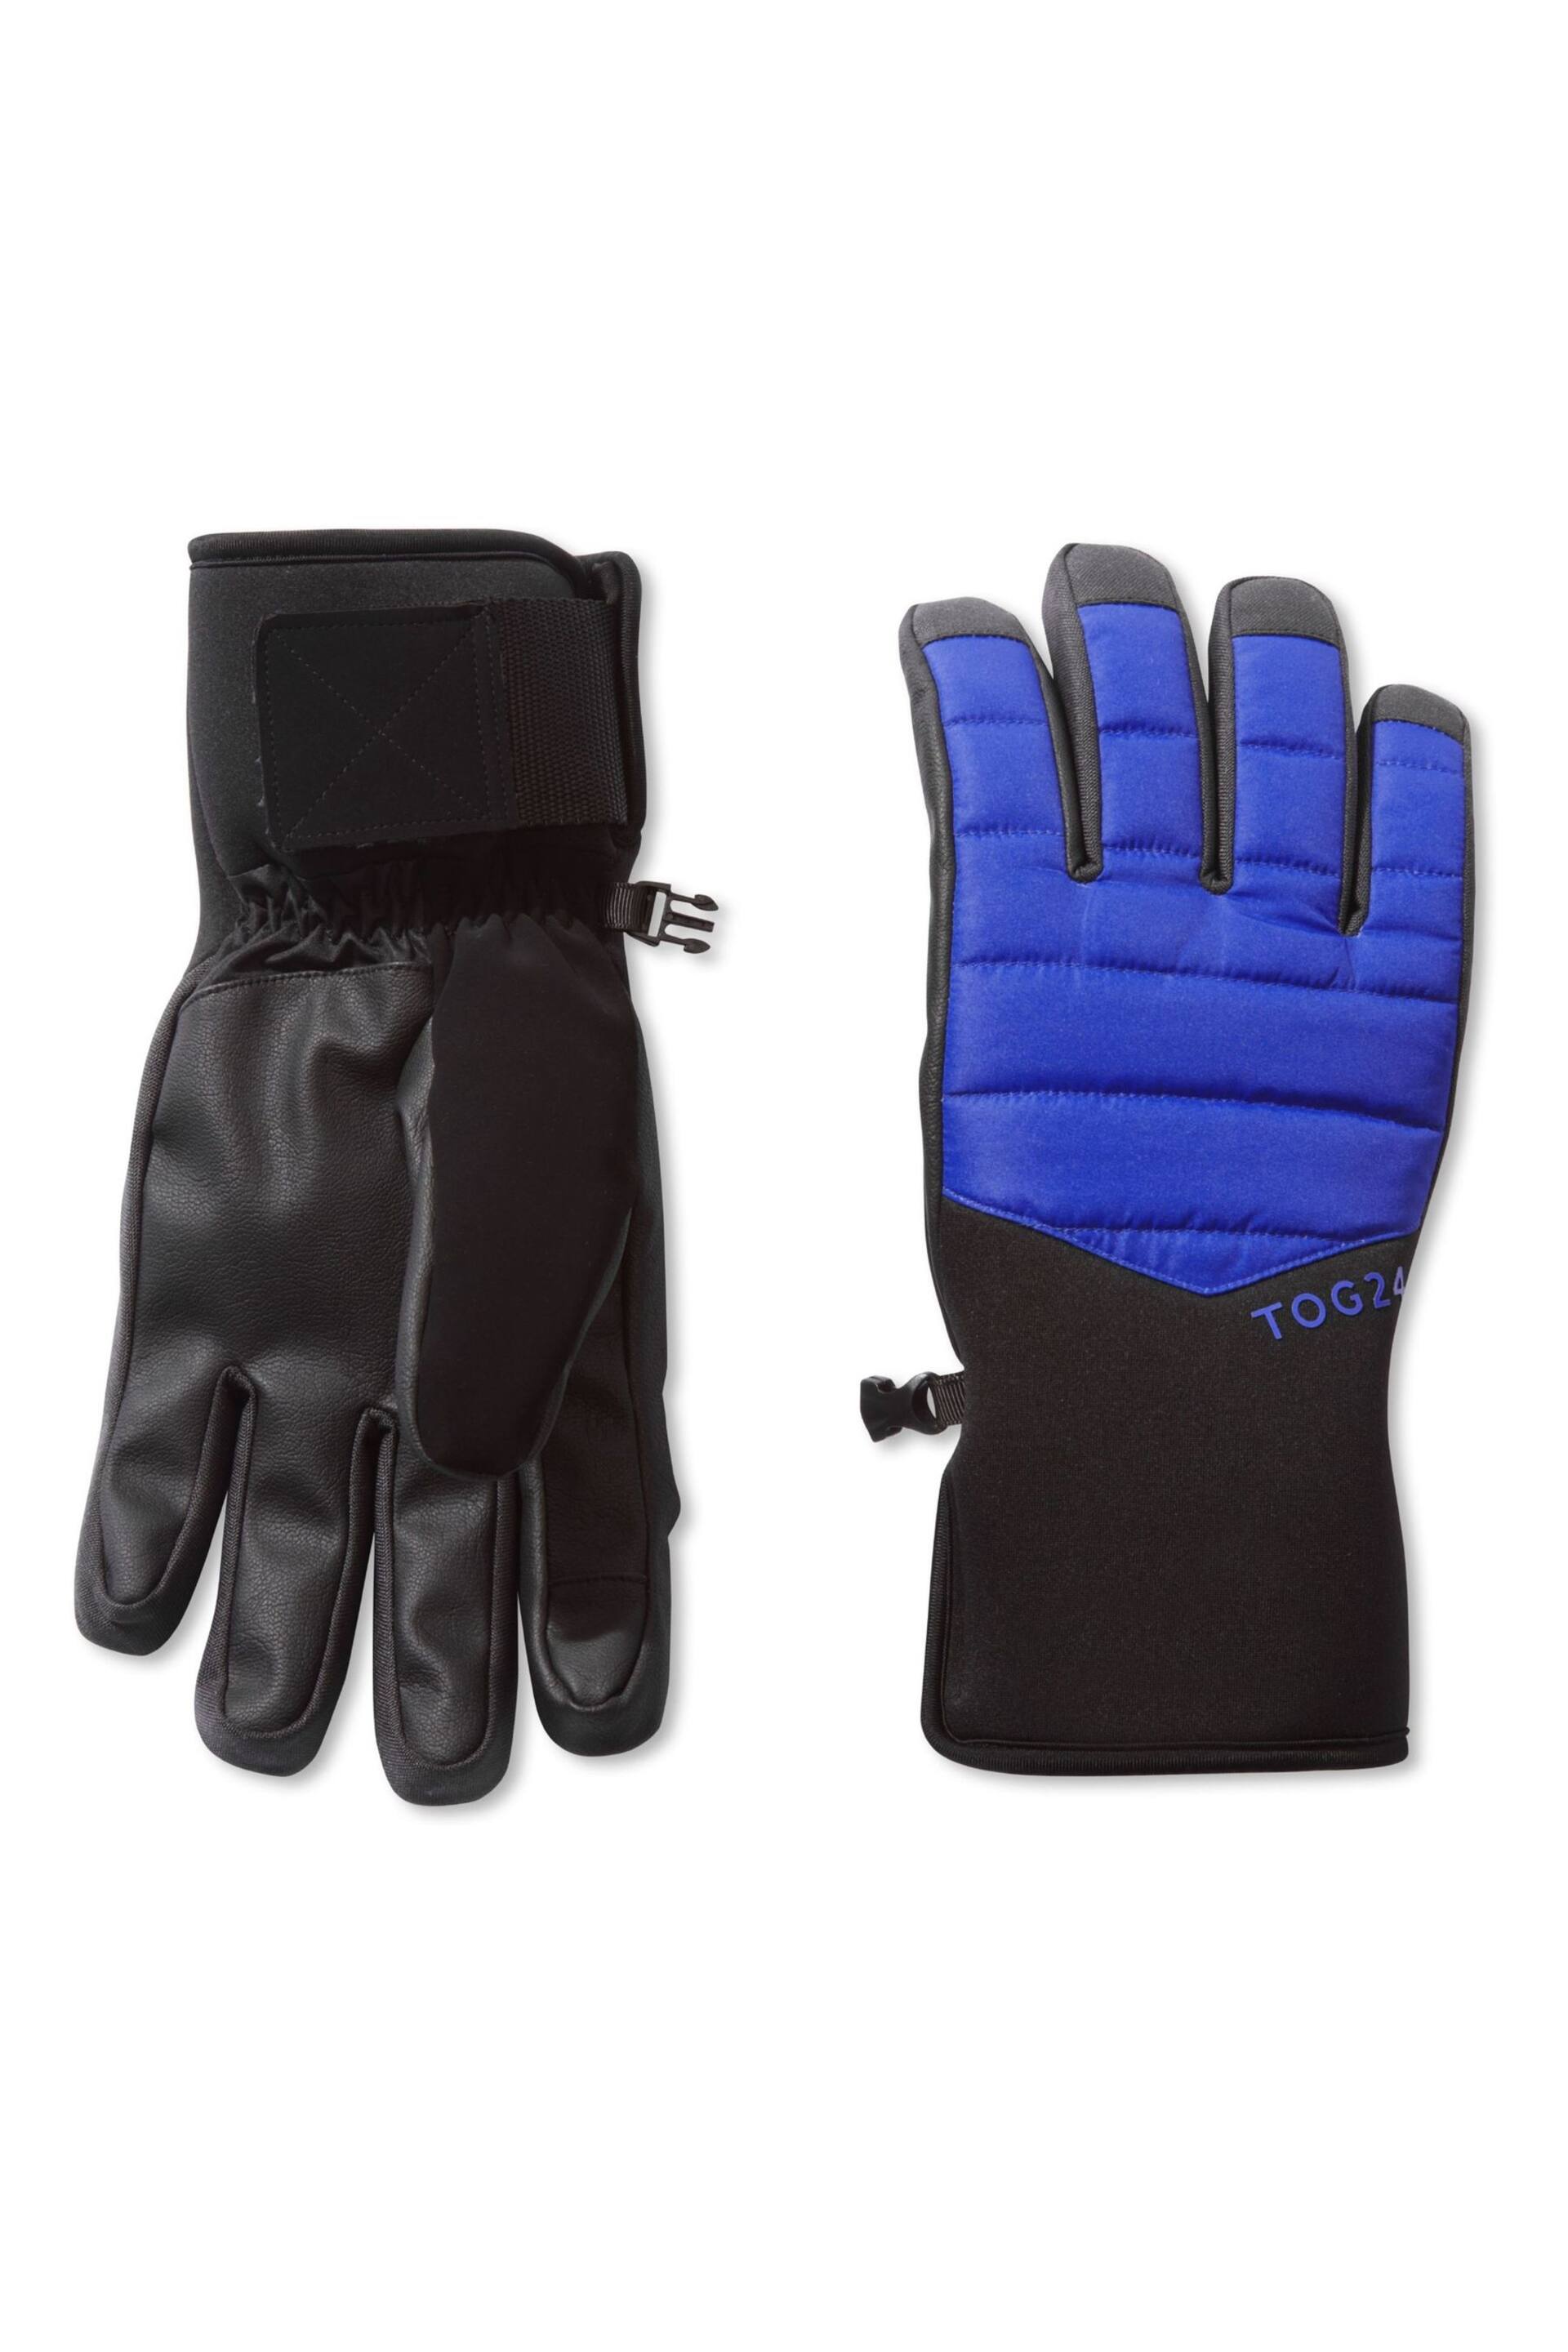 Tog 24 Blue Adventure Ski Gloves - Image 1 of 3